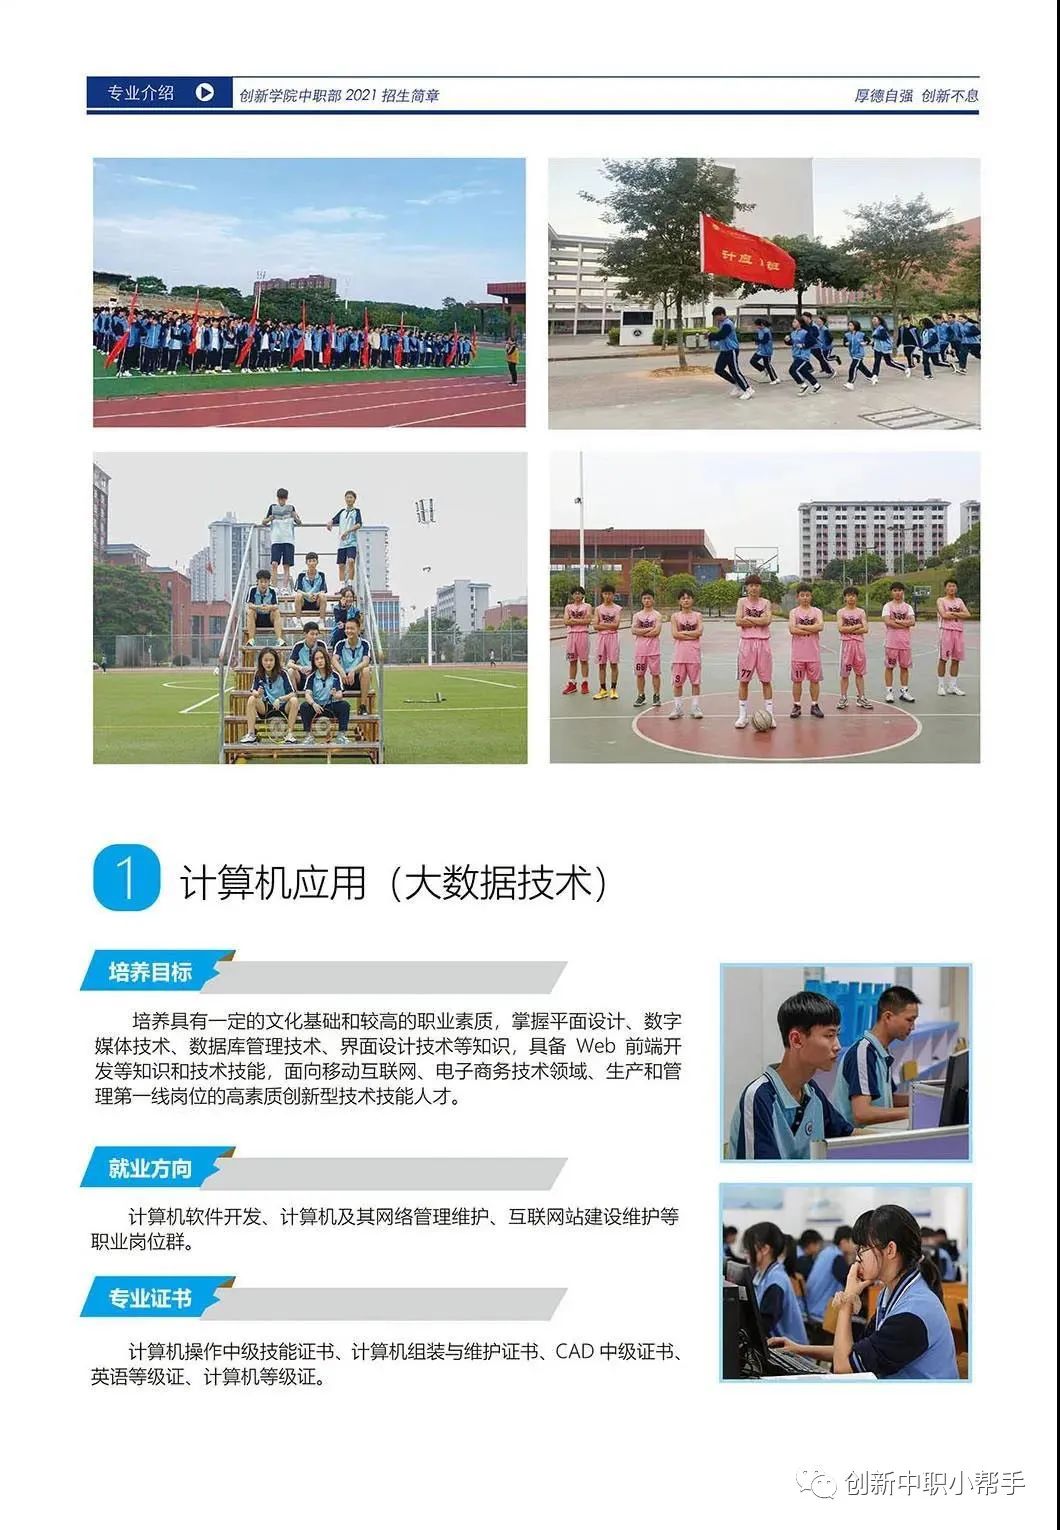 广东创新科技职业学院 中职部丨2021年招生简章